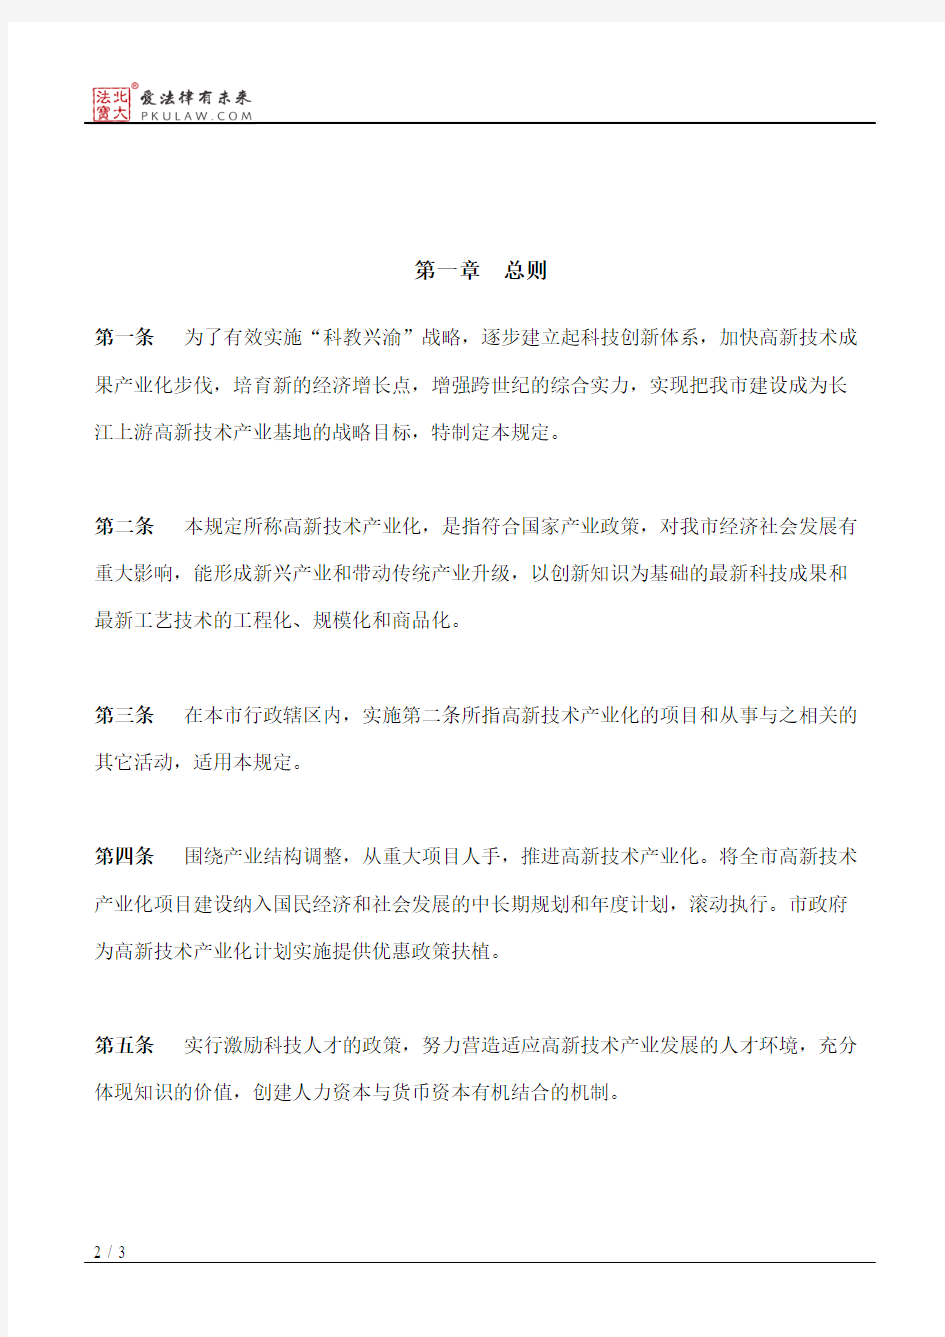 重庆市人民政府关于印发重庆市推进高新技术产业化的若干规定的通知